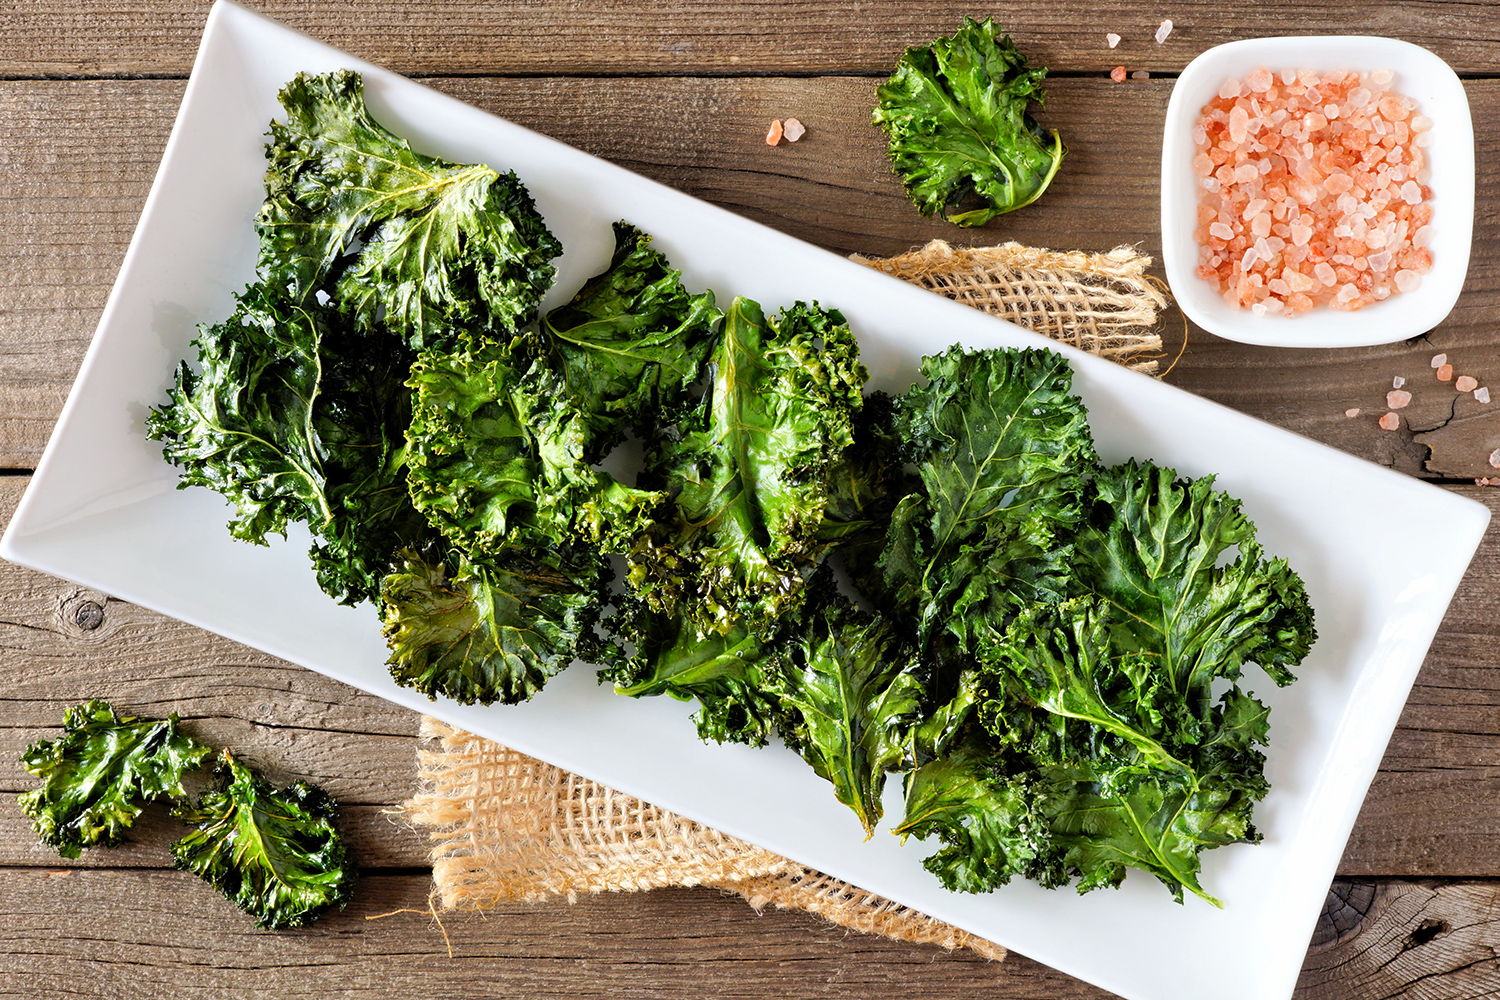 How to Make Kale Taste Better